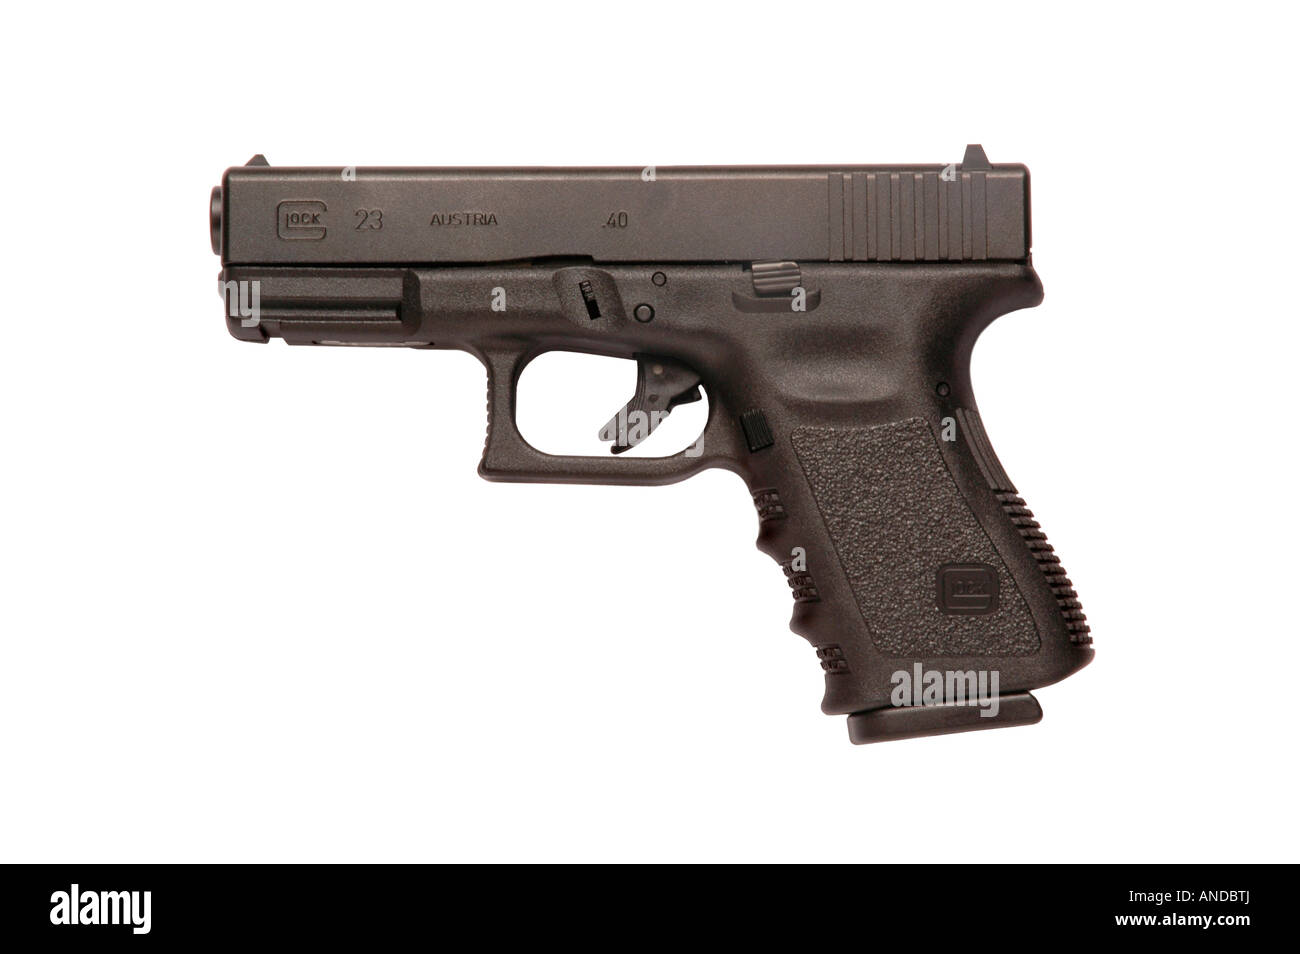 Glock automatic 9mm handgun pistol firearm Stock Photo